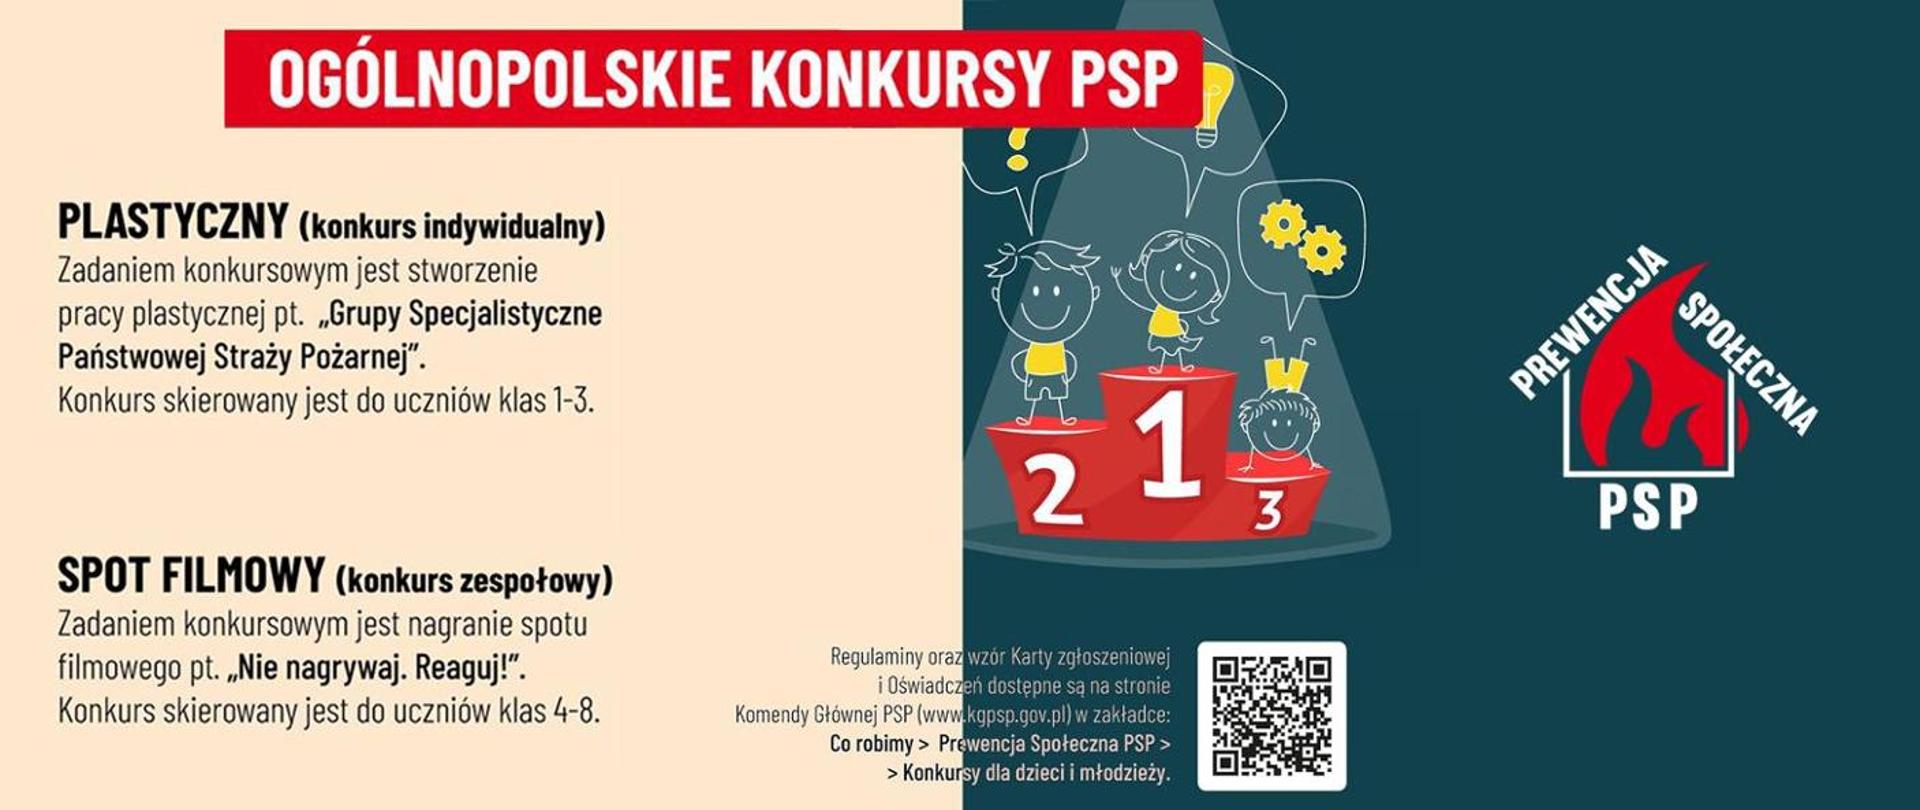 Plakat konkursów plastycznych organizowanych przez PSP